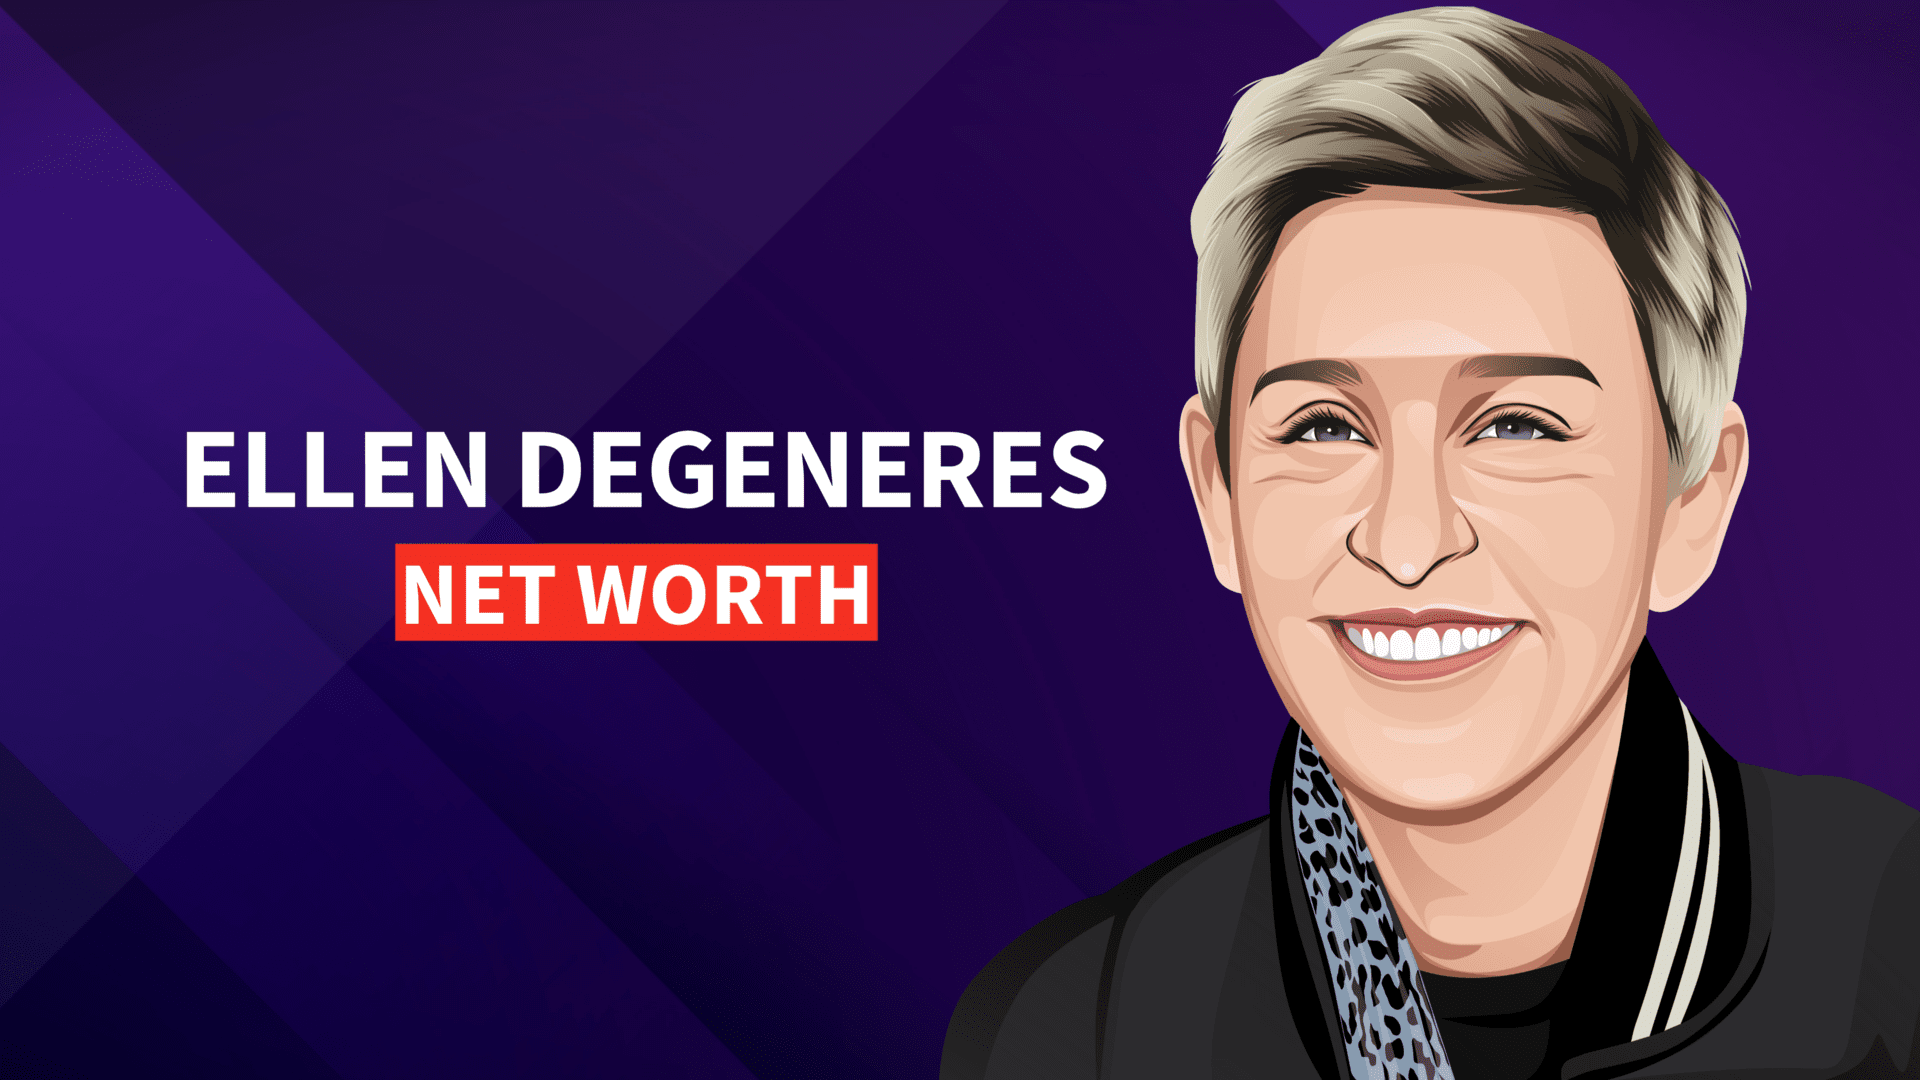 Ellen Degeneres' net worth